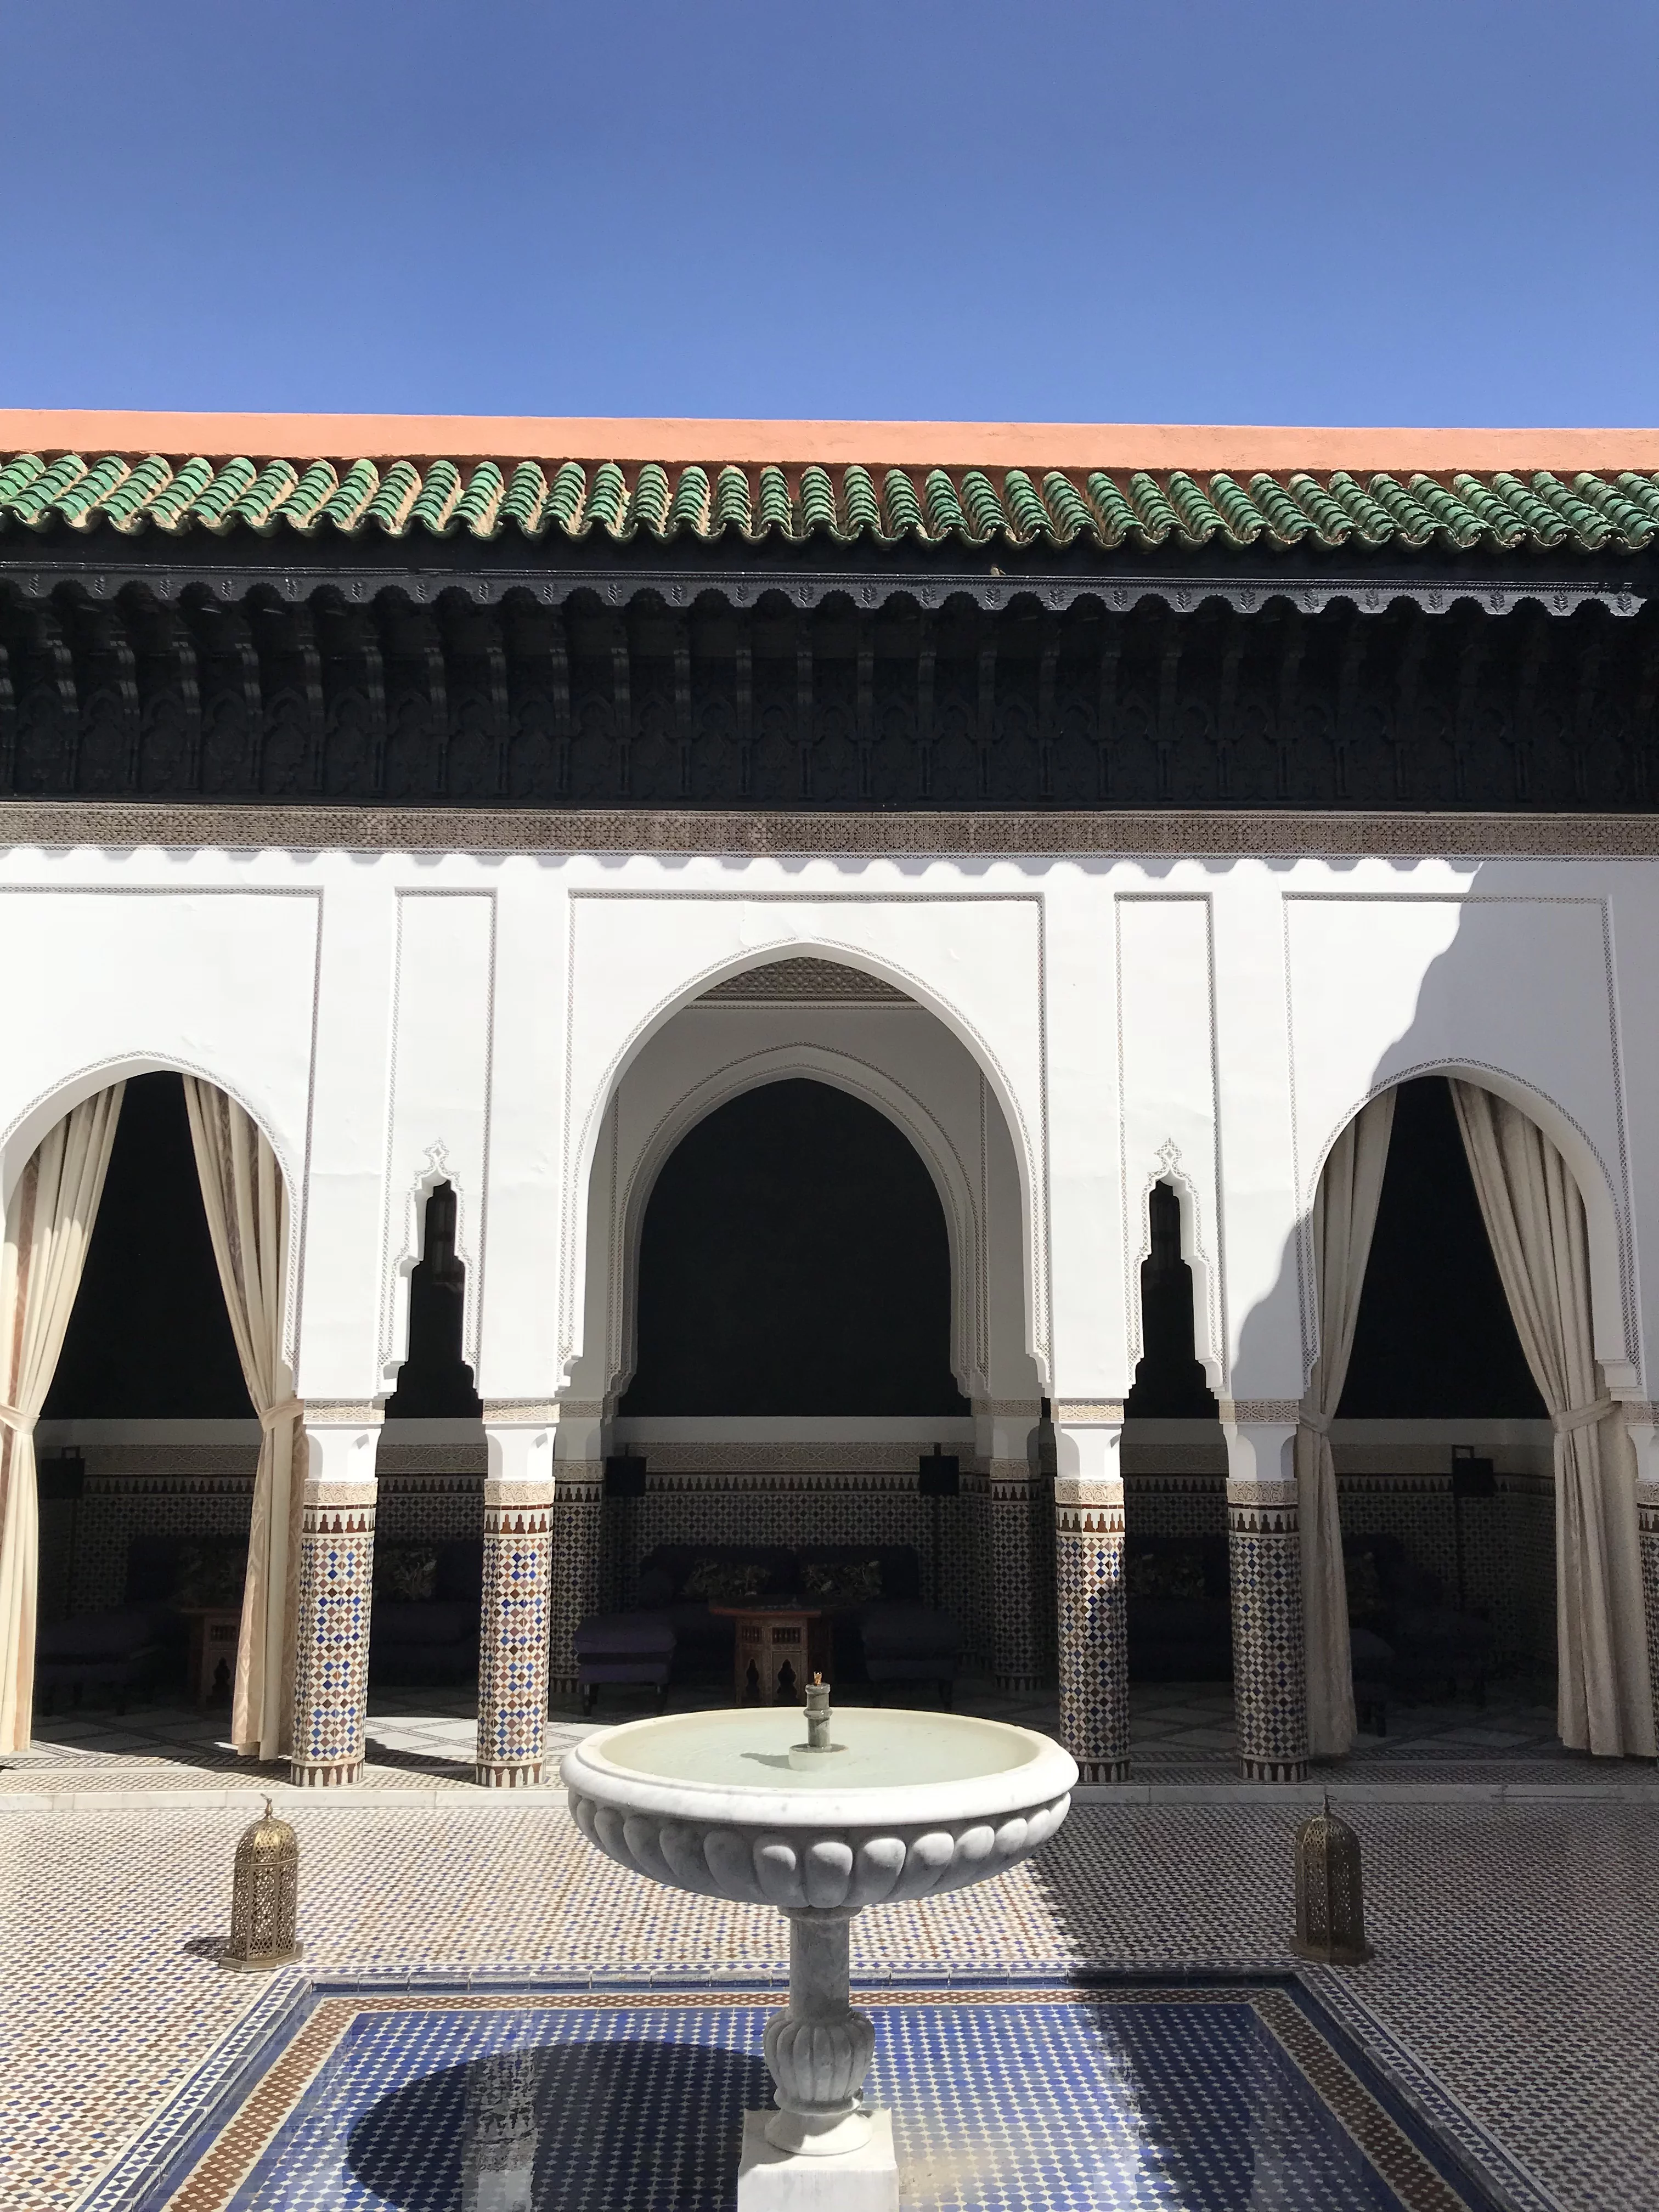 OUR STAY AT LA MAMOUNIA IN MARRAKECH | La Mamounia - La Mamounia Marrakech - La Mamounia Spa - Hotel La Mamounia - La Mamounia Hotel - Mamounia - Morocco Hotels - Marrakech Hotels - Morocco Travel Blog - La Mamounia Review - Hotel Review Morocco - Morocco Travel Blog #morocco #travelblog #marrakech